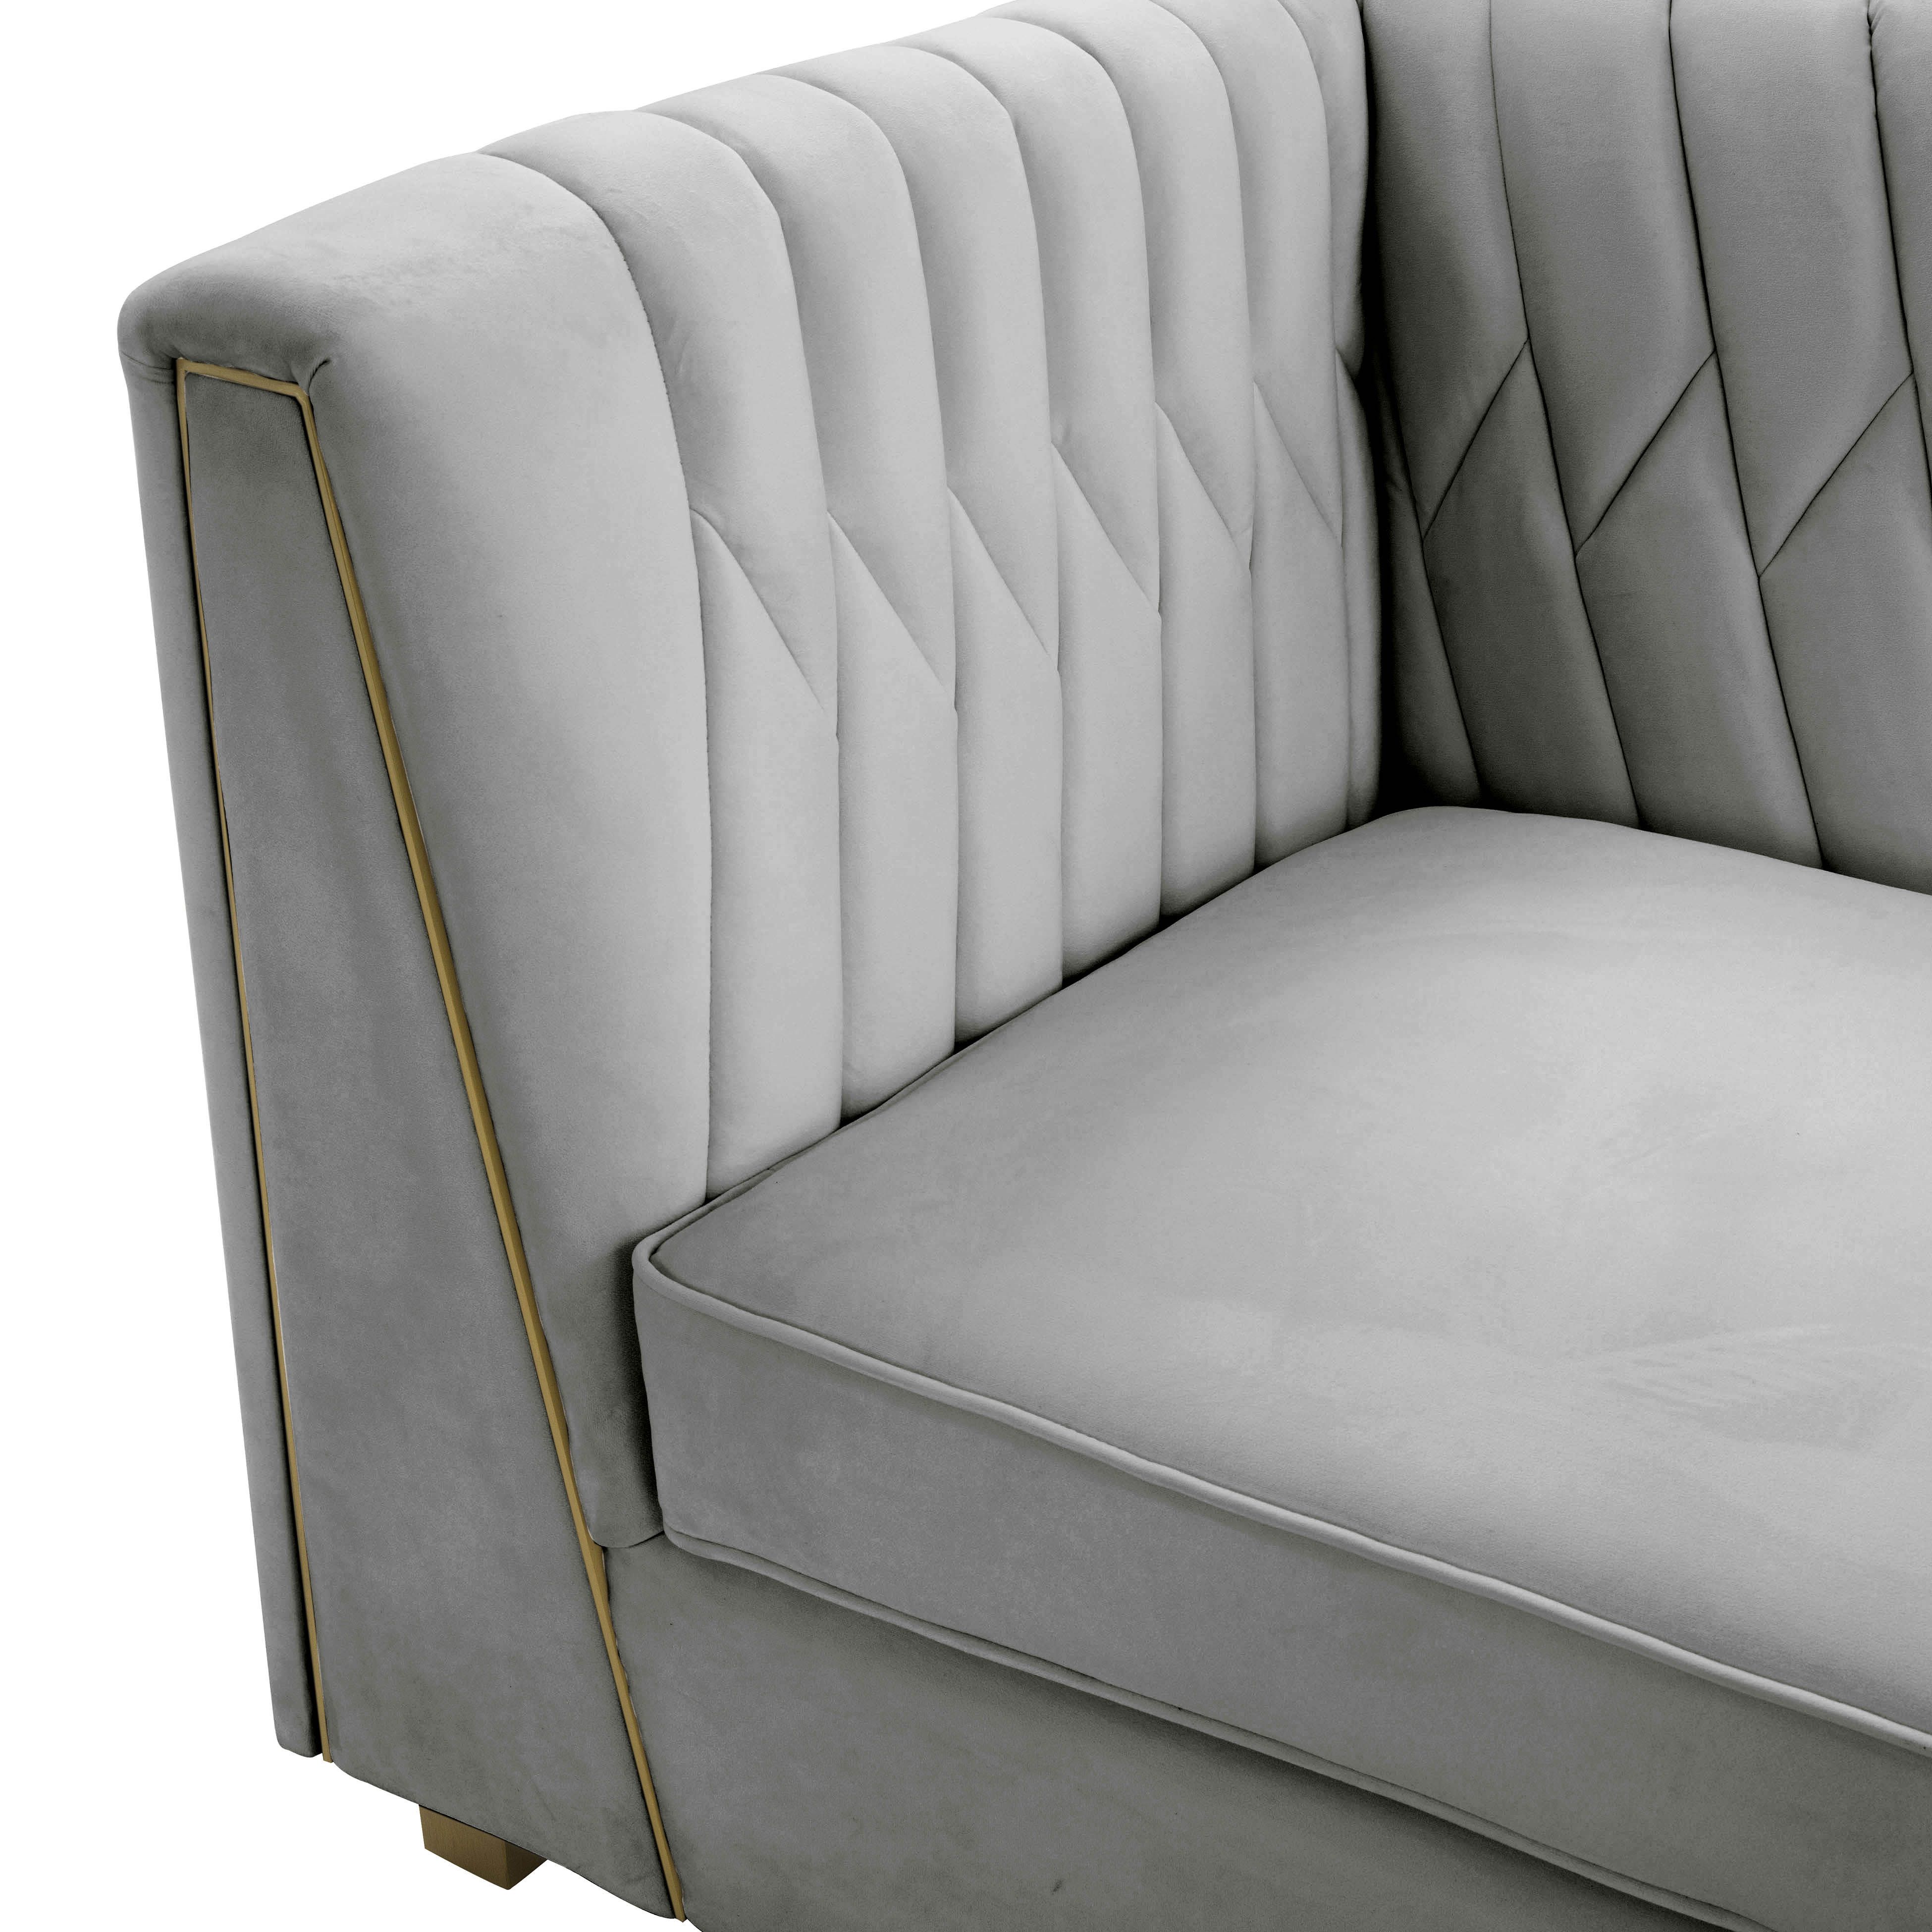 Wafa Light Grey Velvet Sofainspire Me! Home Decor – Tov Furniture Within Light Gray Velvet Sofas (View 2 of 15)